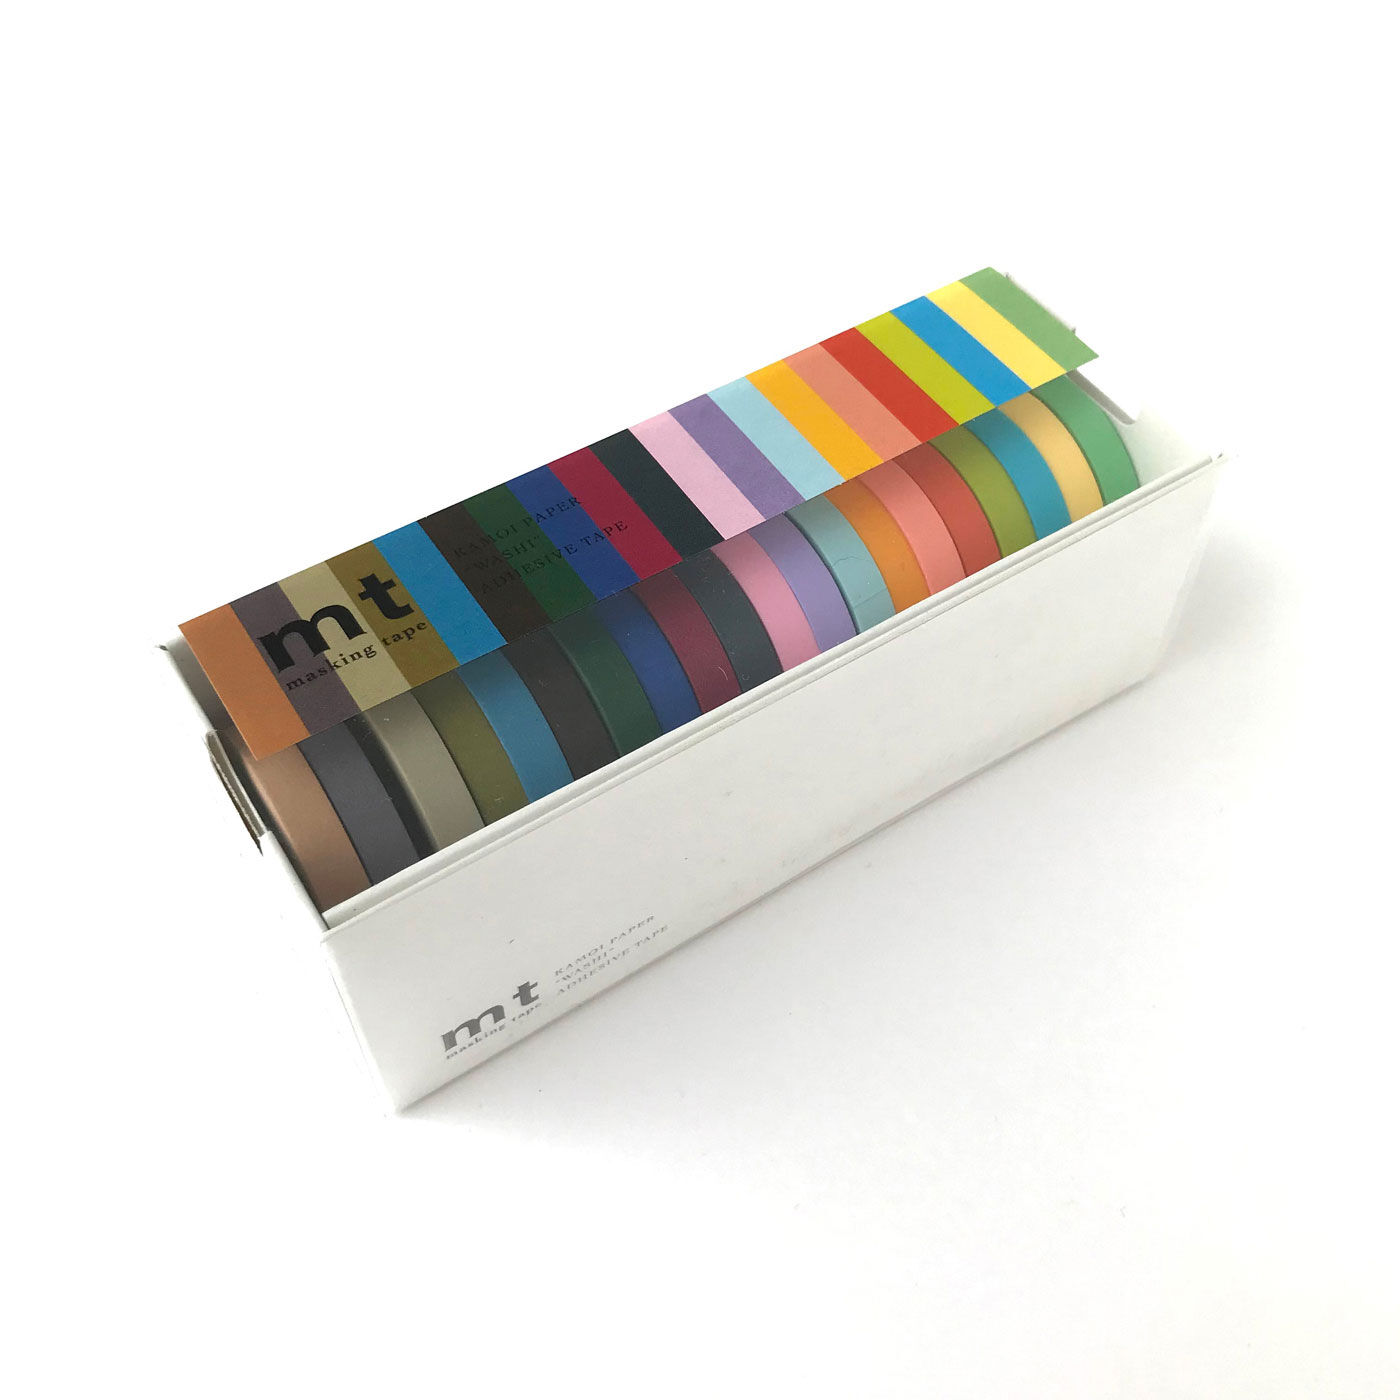 フェリシモの雑貨 Kraso|マスキングテープ 無地20色セット〈細幅〉|箱入りなので使いやすくて、片づけやすい。